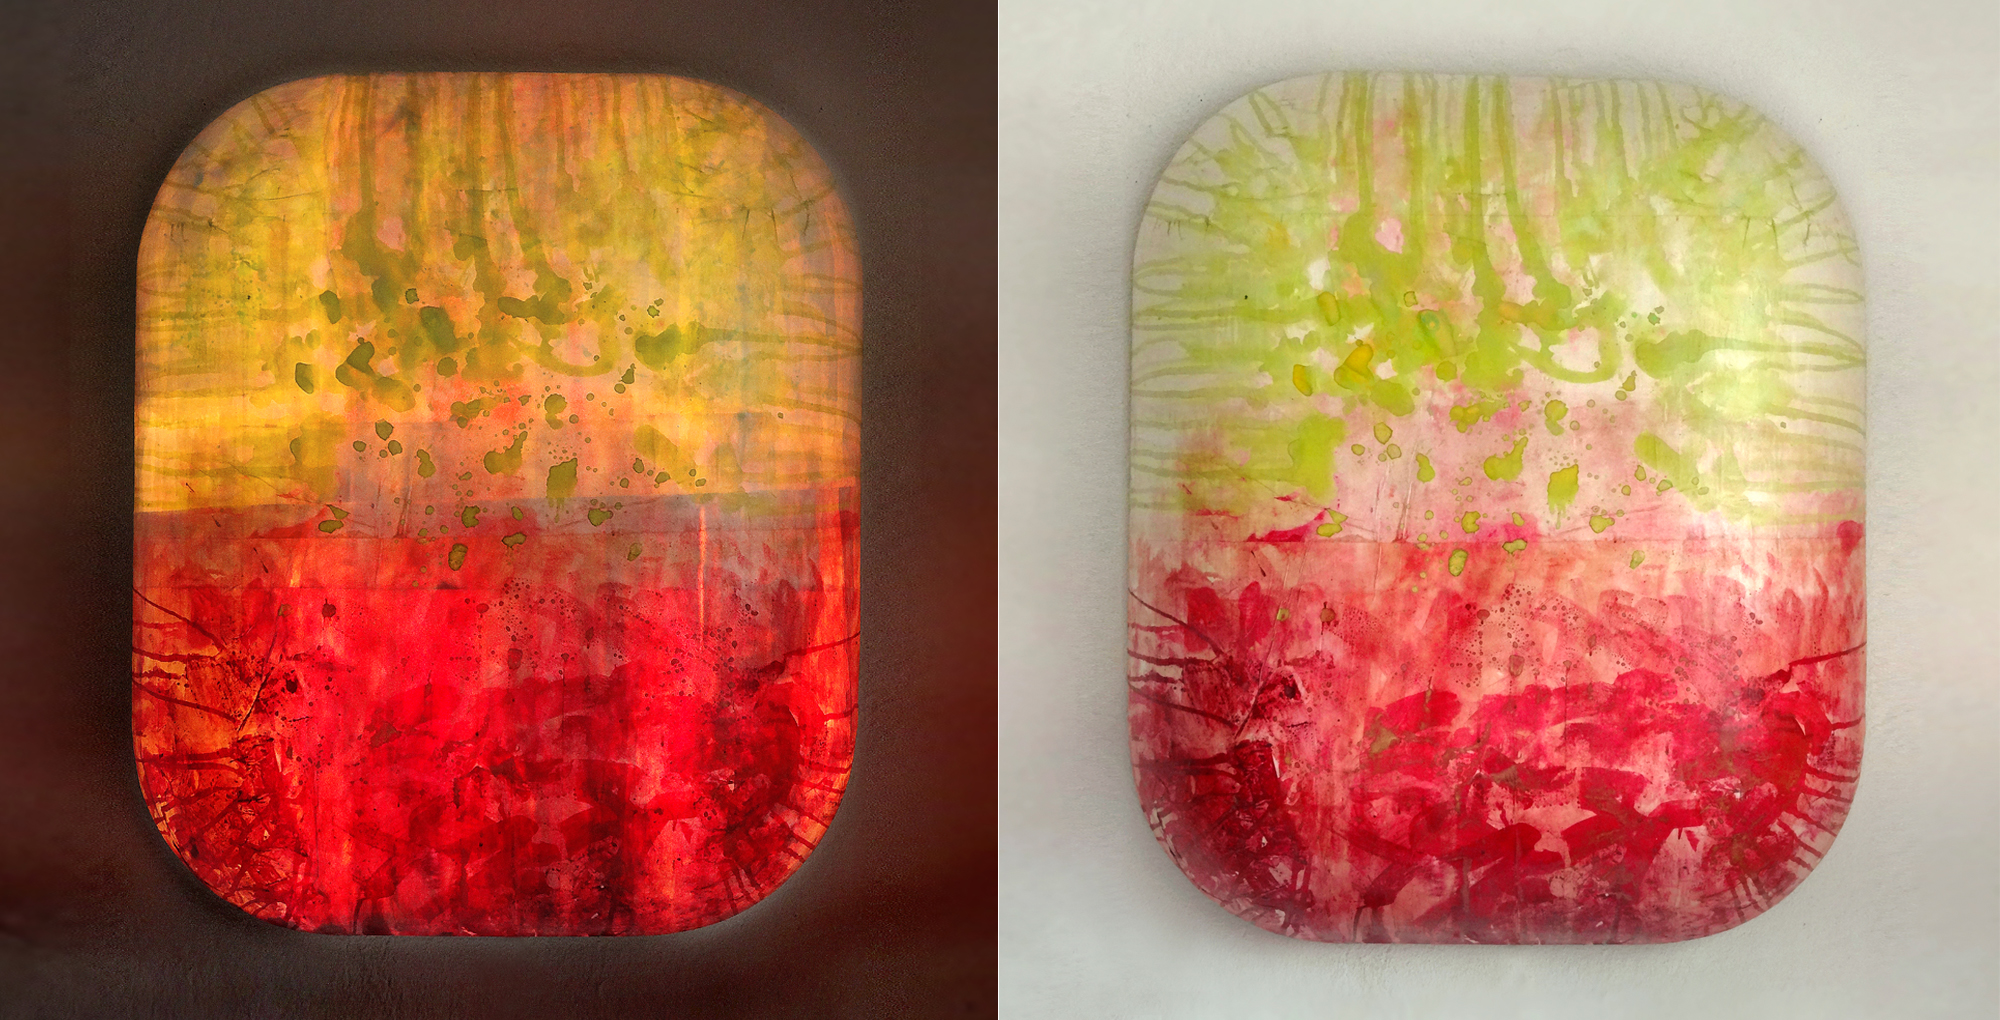 Leuchtobjekt – Beize und Ölfarbe auf Papier, 83 x 70 x 20 cm I 2013/18